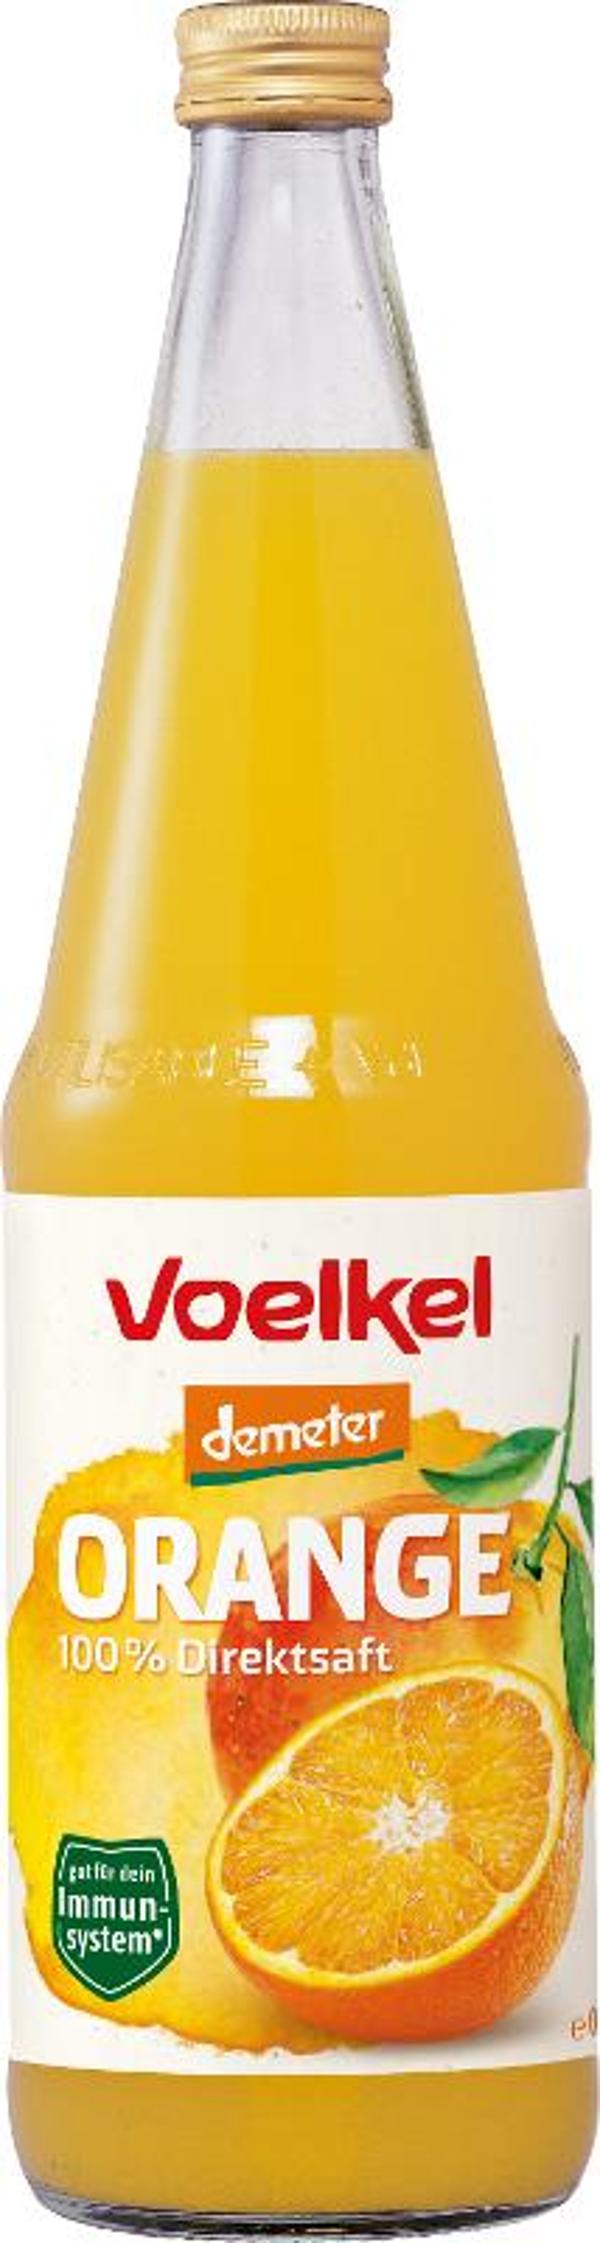 Produktfoto zu Orangensaft von Voelkel *Demeter